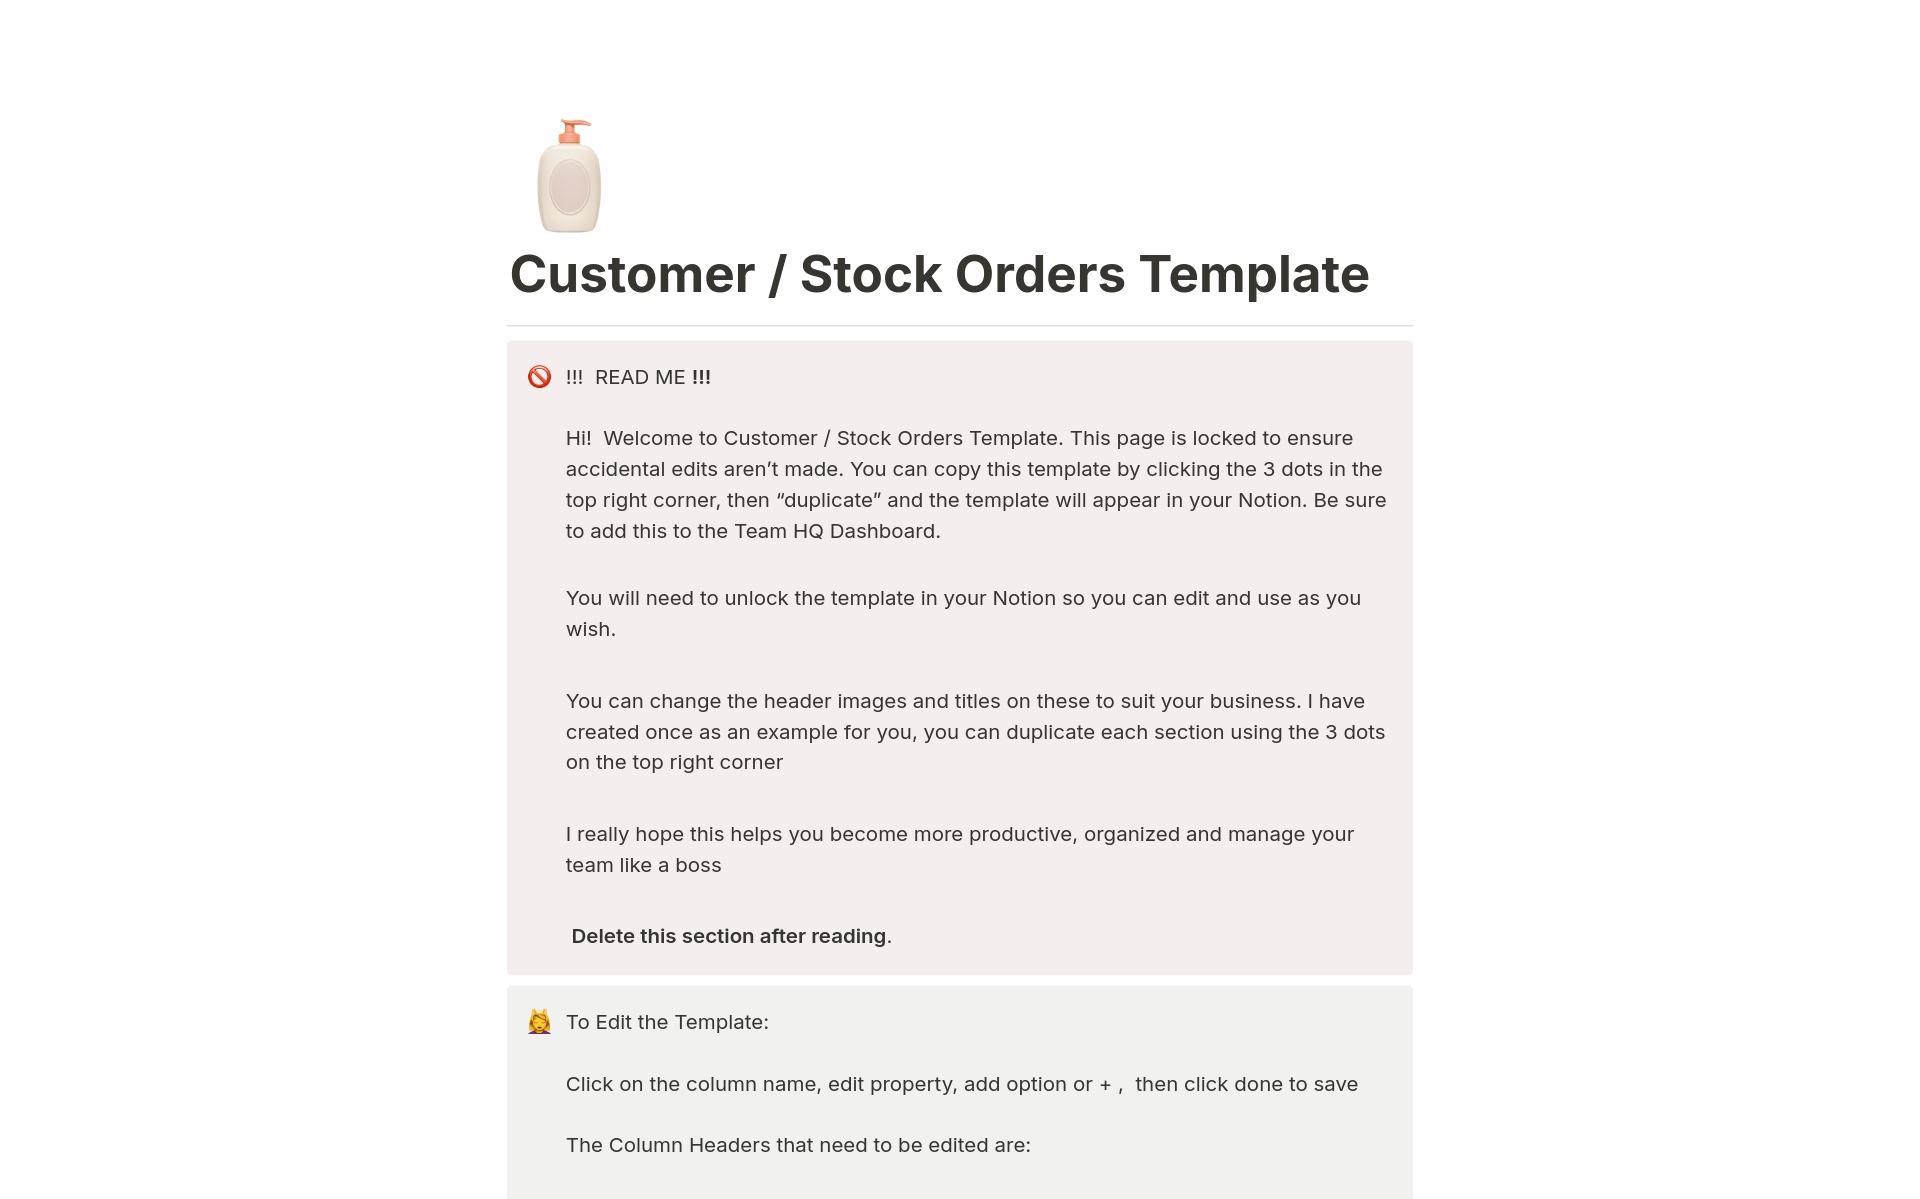 Aperçu du modèle de Customer / Stock Orders